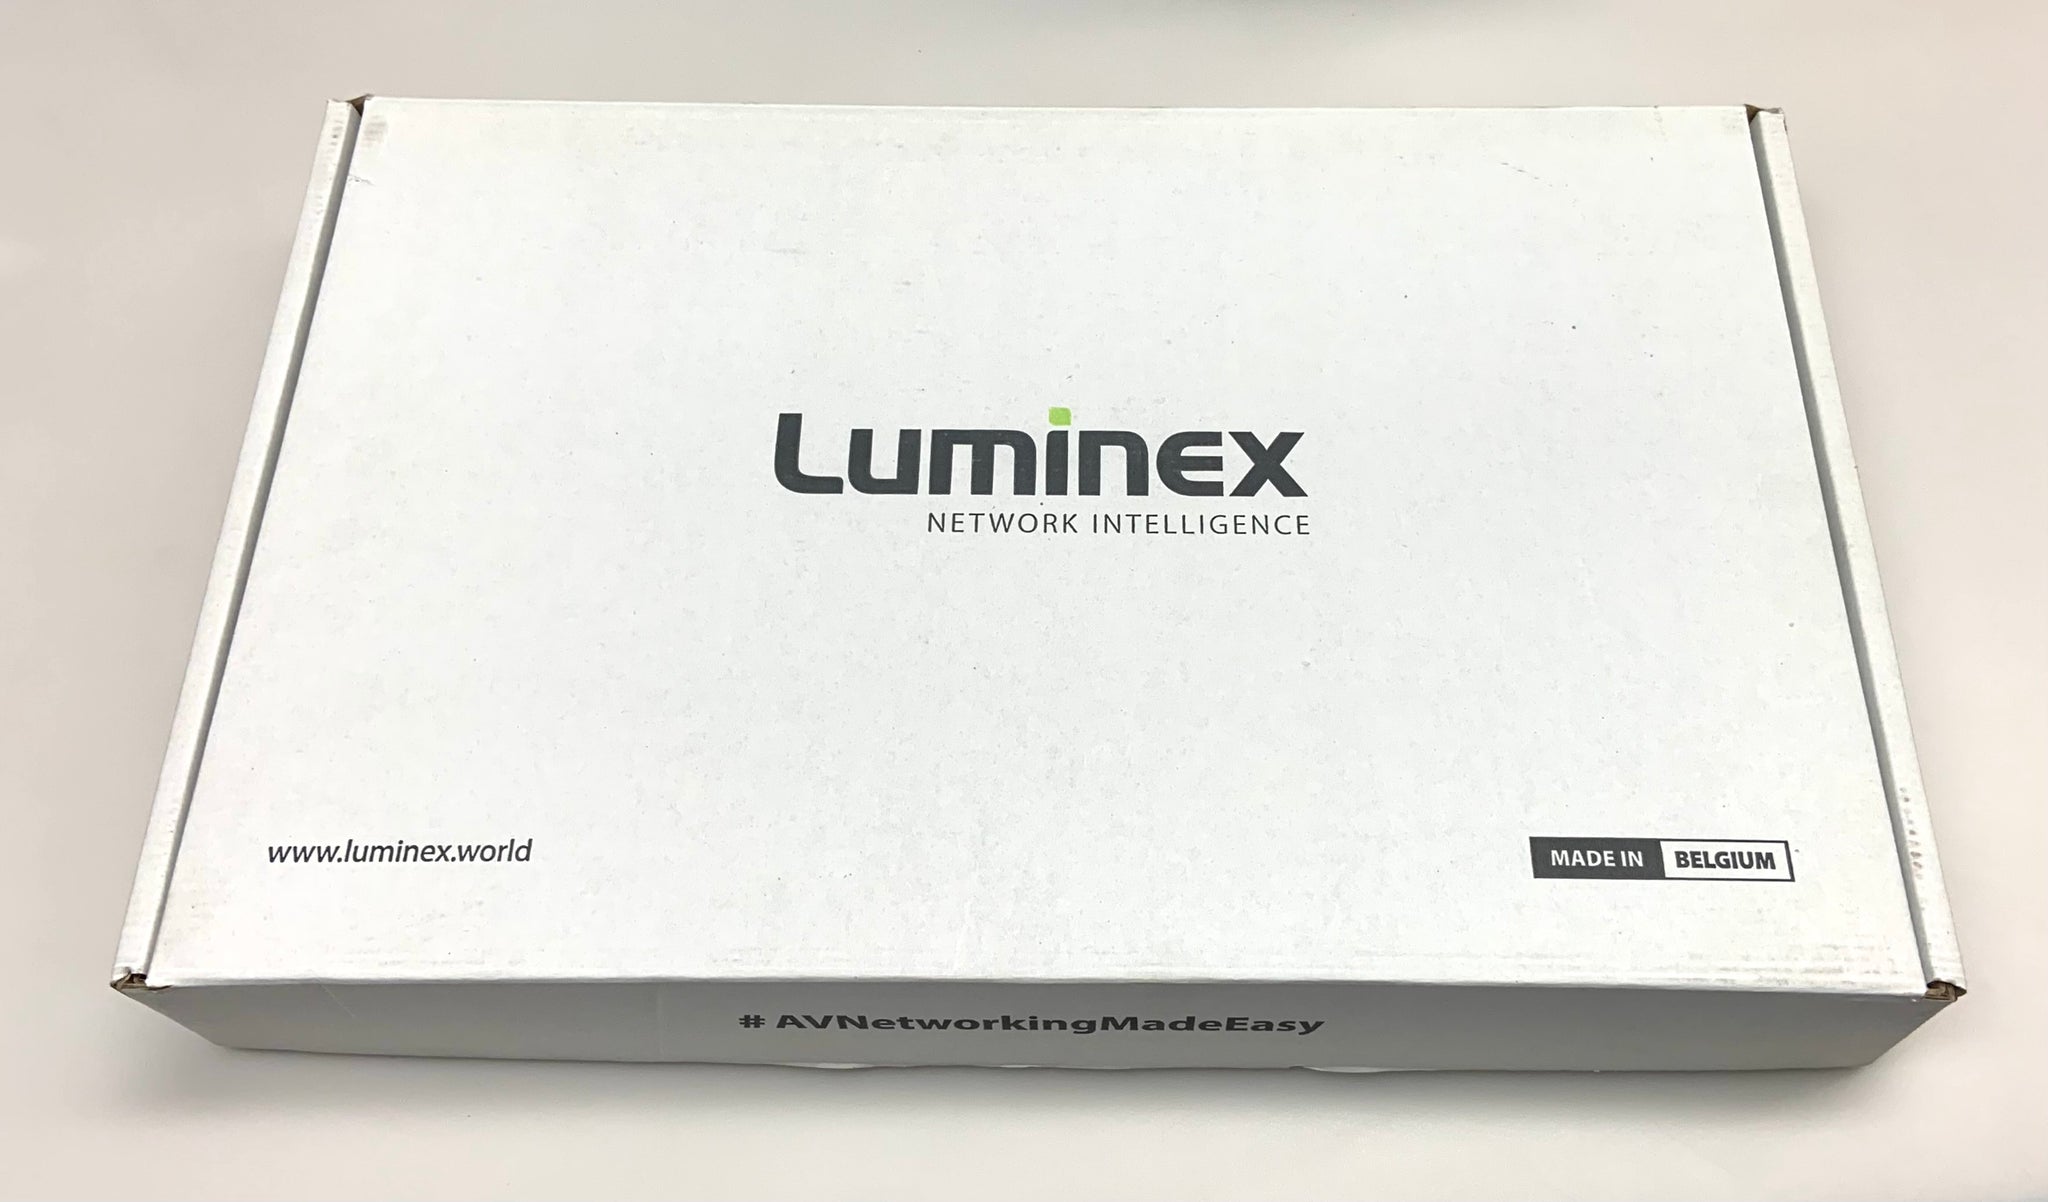 Luminex GigaCore 10 (Neutrik DUO SMF) - 01 00058-NDS